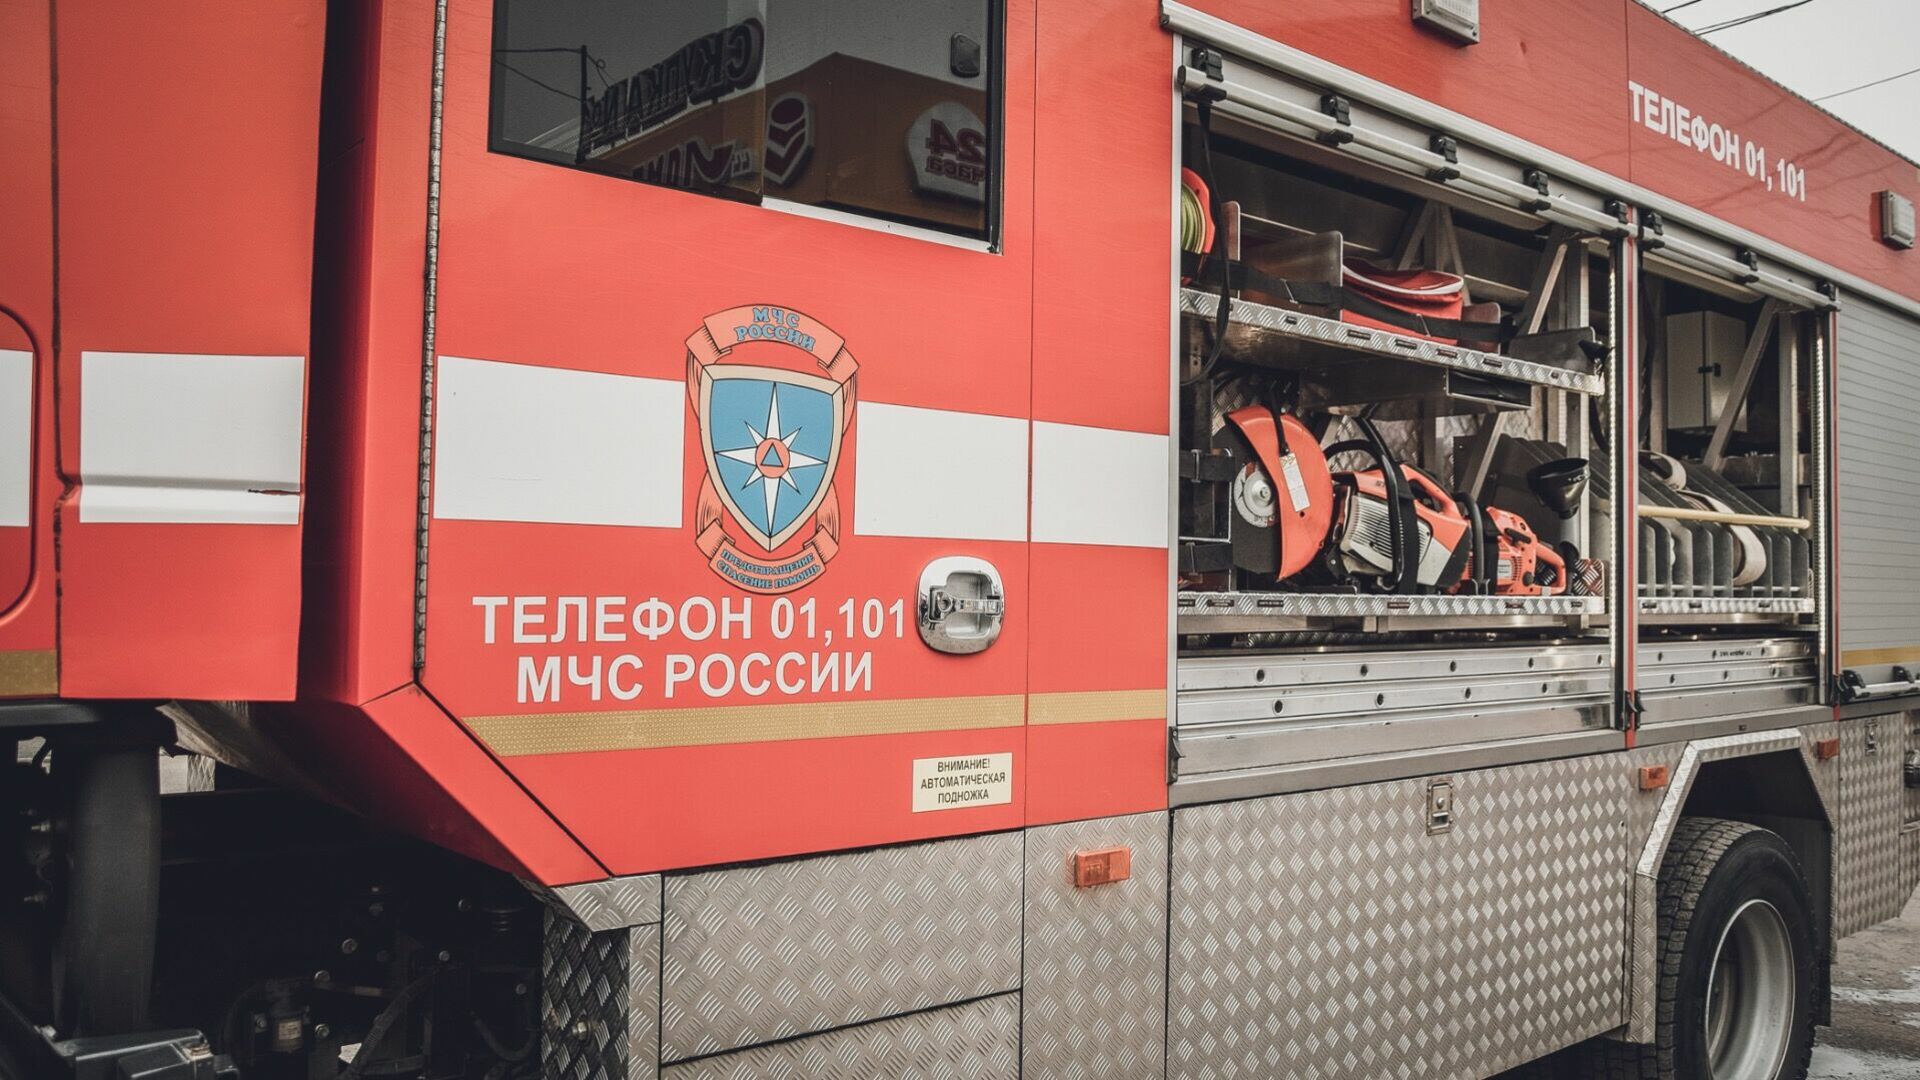 В Челябинской области замыкание гирлянды привело к пожару. Погиб человек